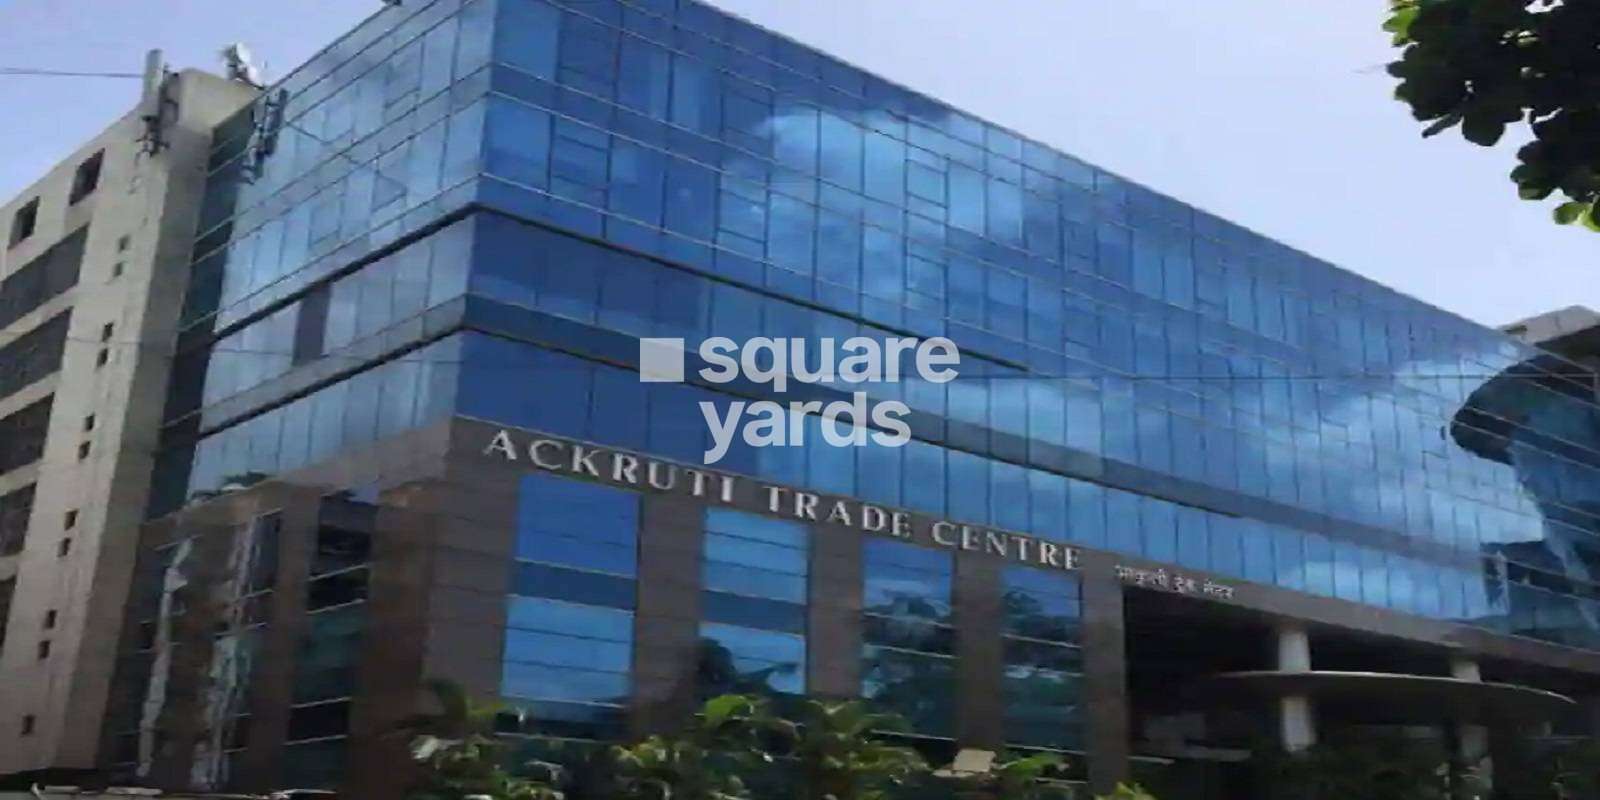 Ackruti Trade Centre Cover Image